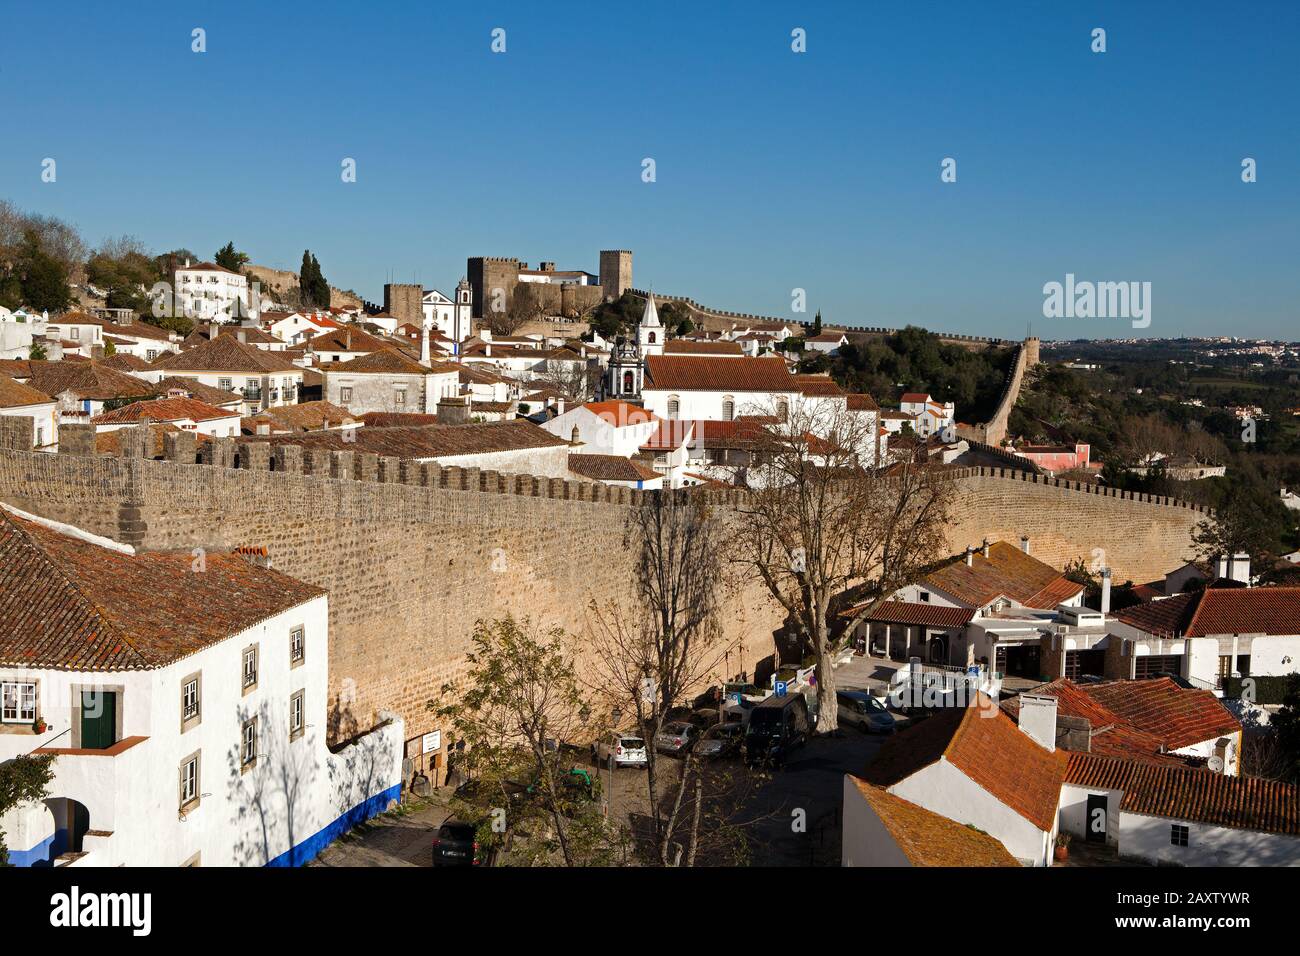 Construit au XIIIe siècle, le château et les hauts murs entourant Obidos, cité créative de la littérature par l'UNESCO, ont protégé la ville depuis des siècles. Banque D'Images